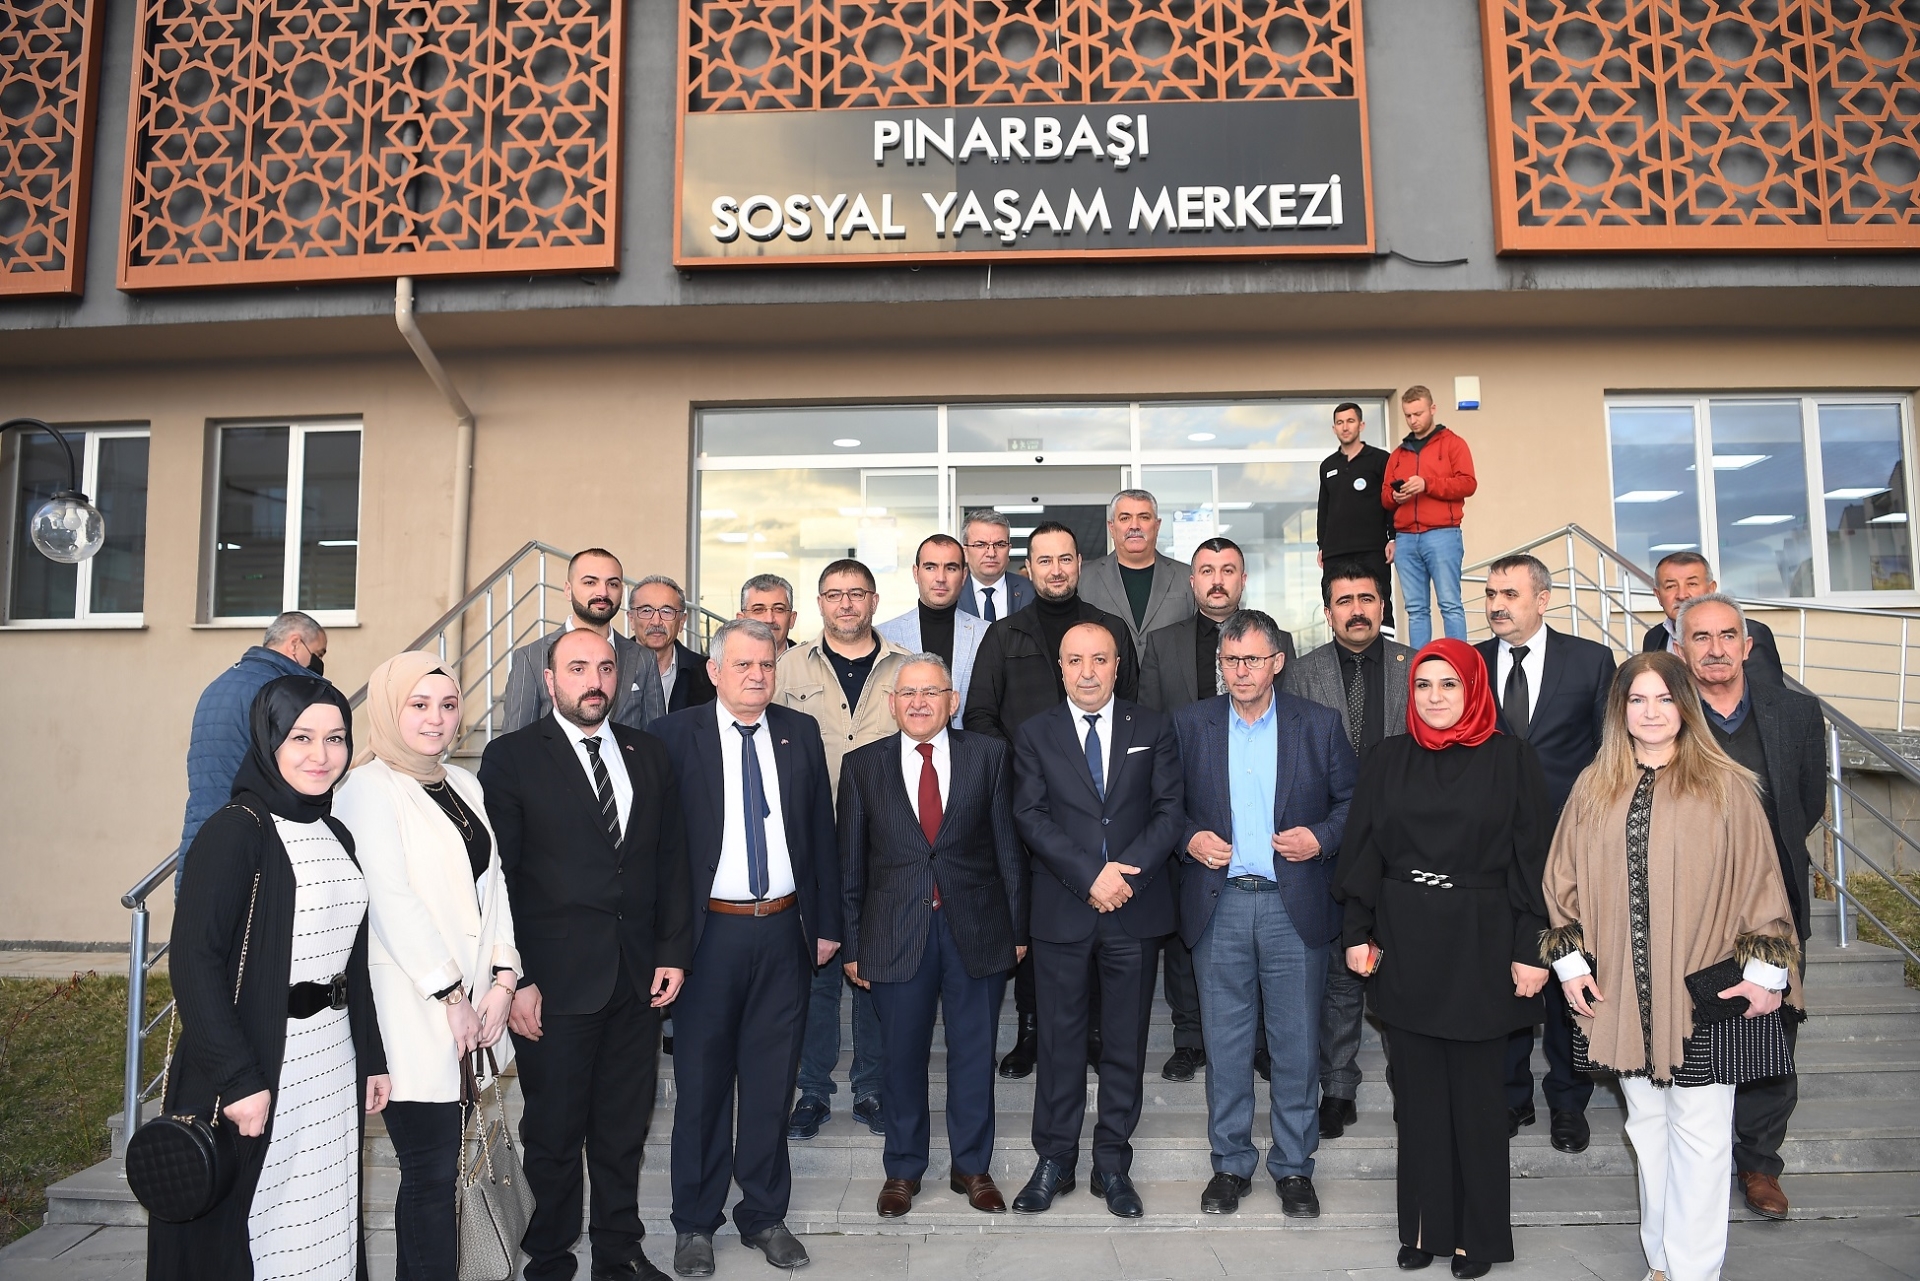 Kayseri Büyükşehir Belediyesi, Pınarbaşı’na 5 yılda 500 milyon TL’lik yatırım yaptı